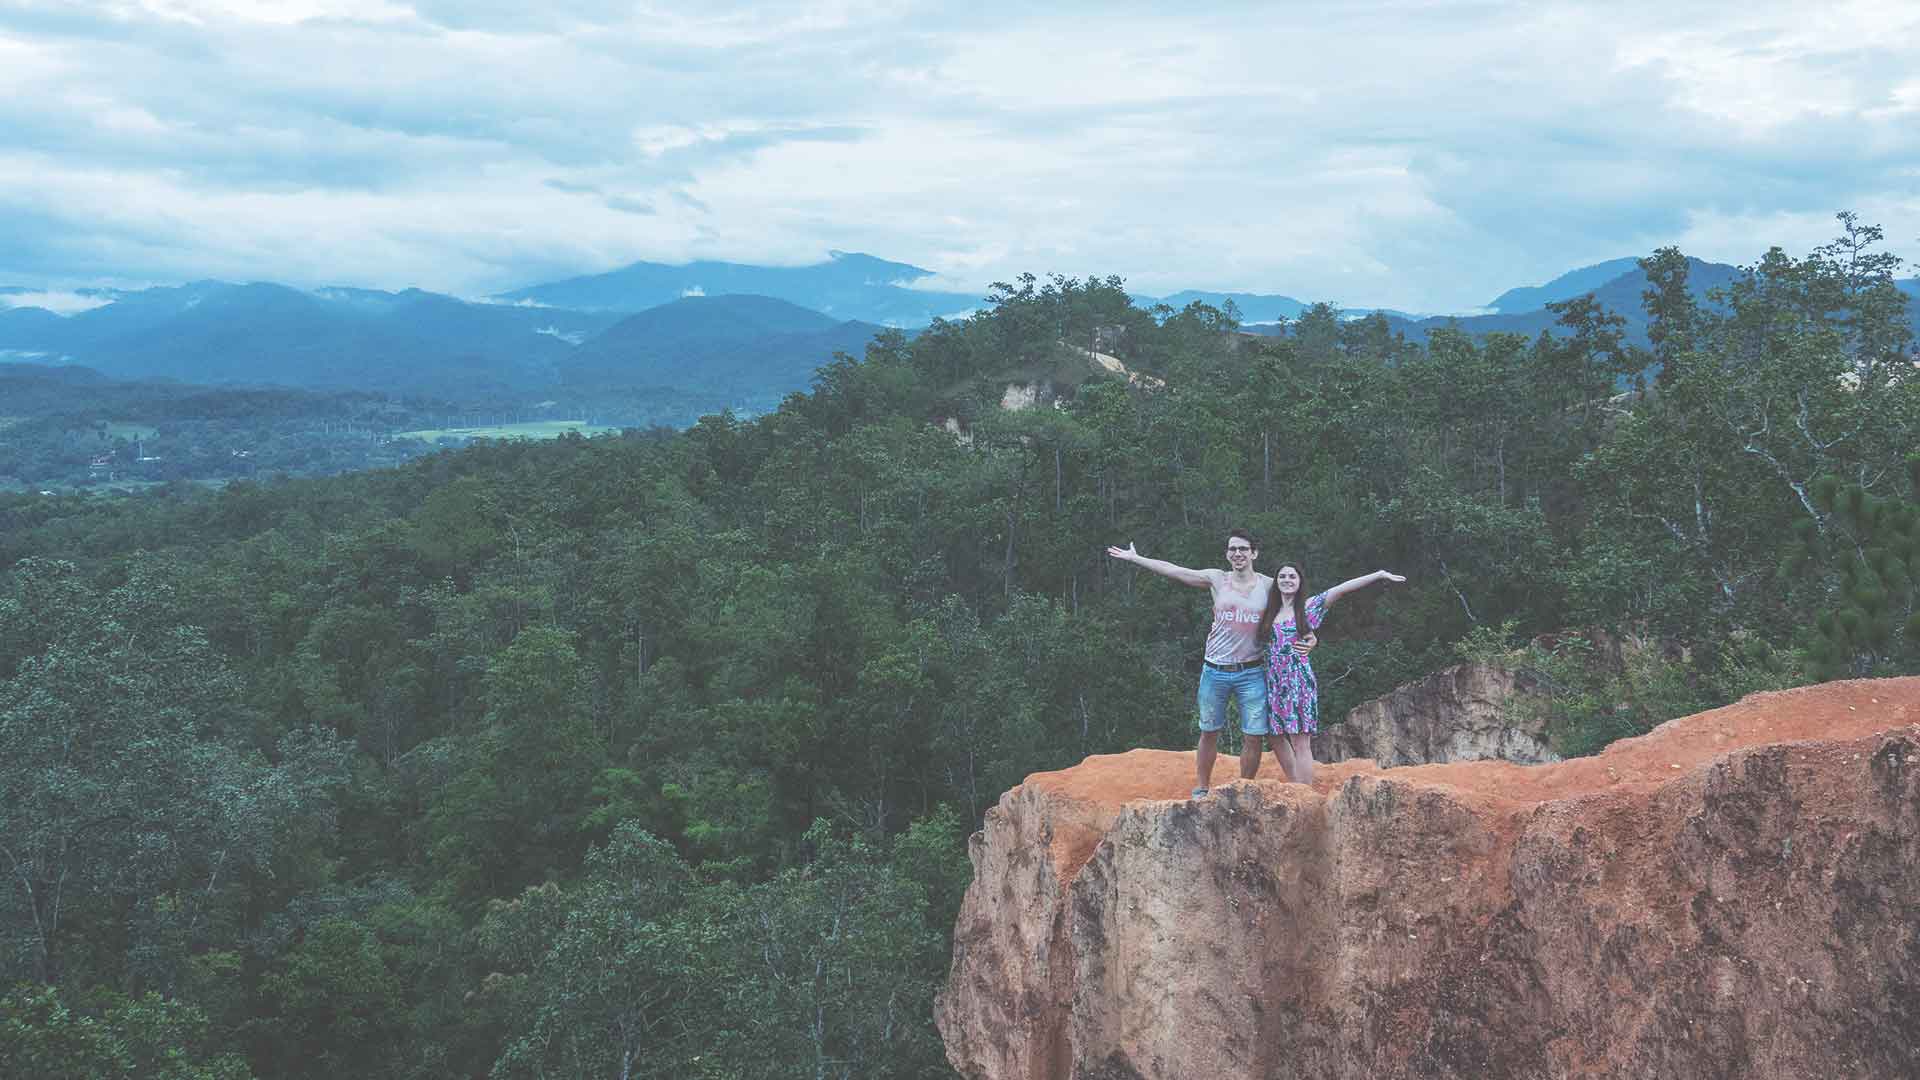 Pai Canyon - Jasmin und Valentin vor dem Abgrund am Pai Canyon mit Aussicht auf Landschaft und Gebirge